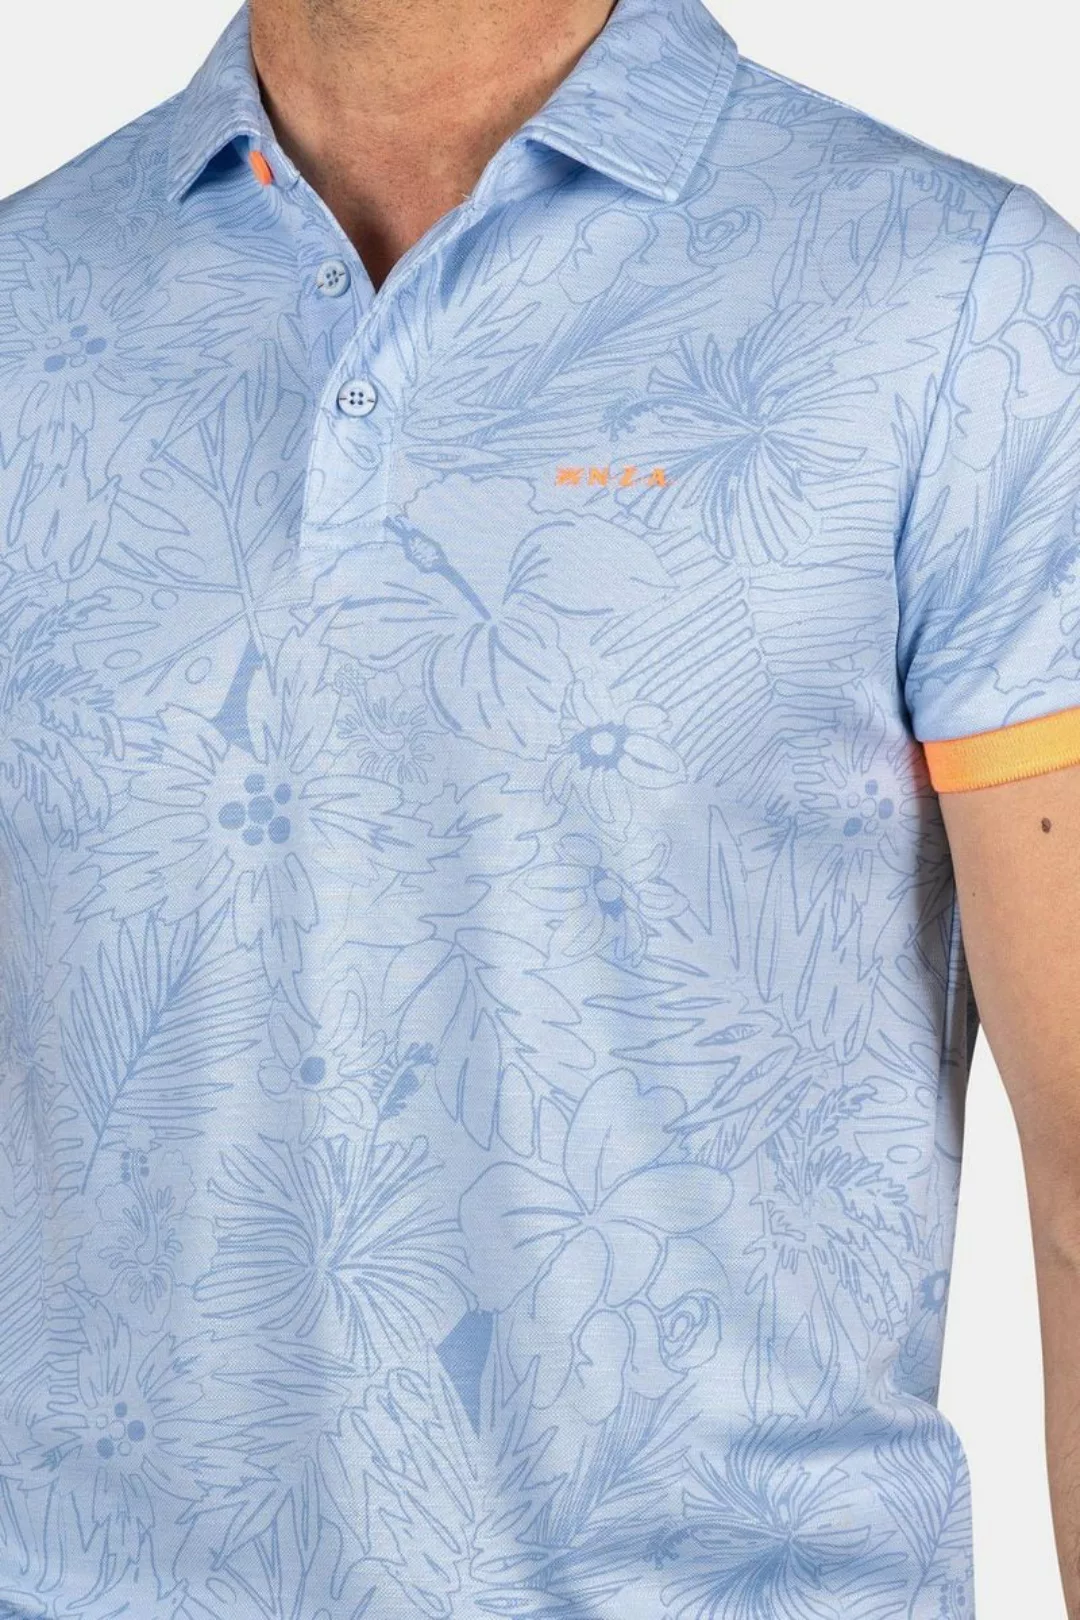 NZA Poloshirt Blake Hellblau - Größe XXL günstig online kaufen